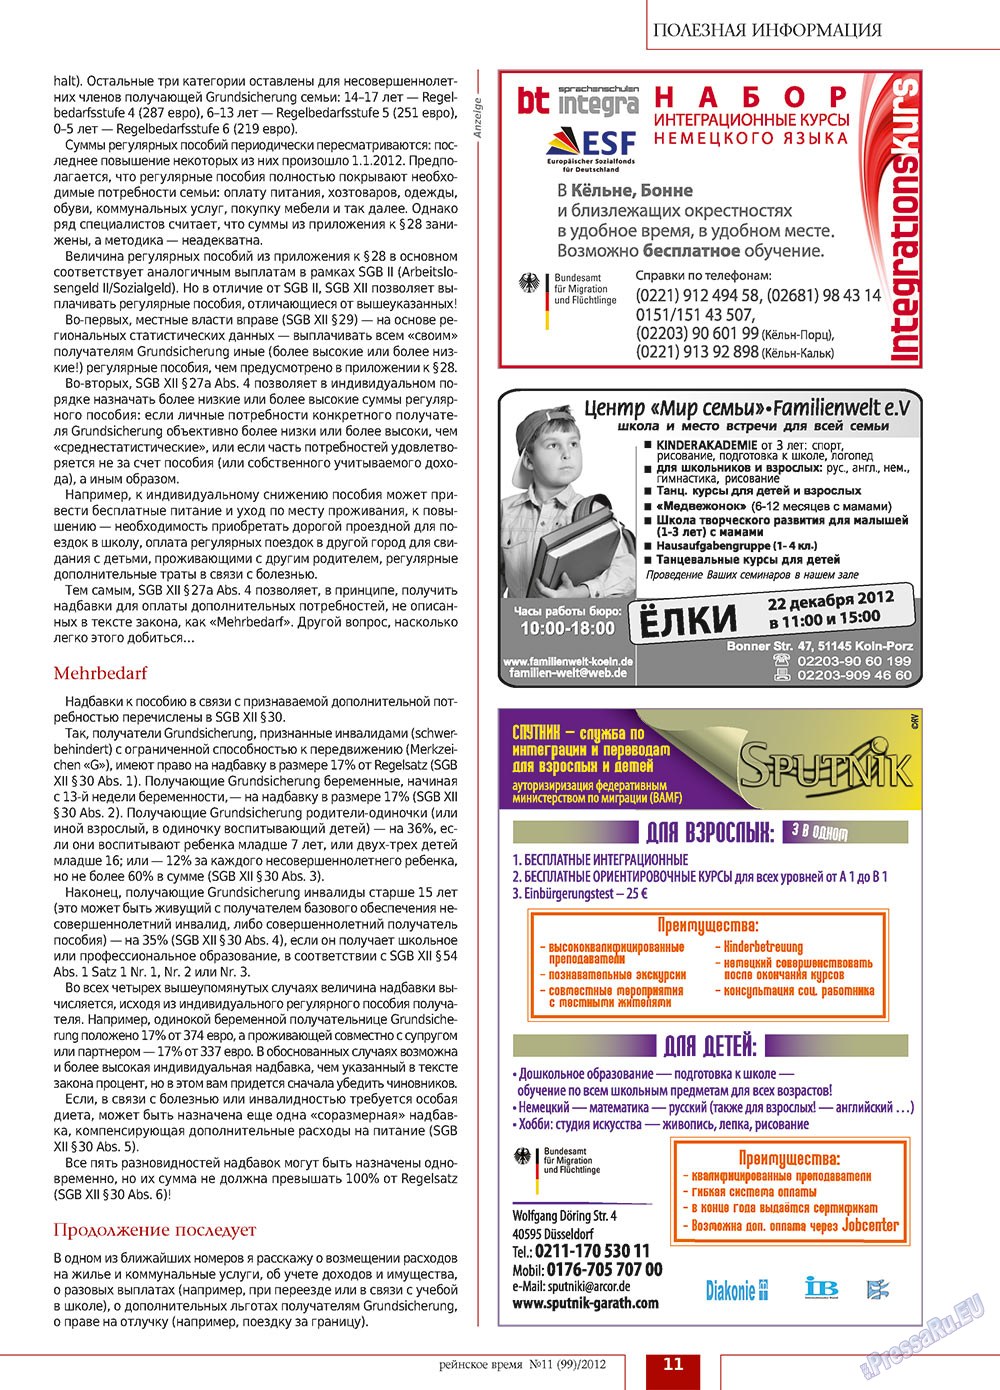 Rejnskoe vremja (Zeitschrift). 2012 Jahr, Ausgabe 11, Seite 11